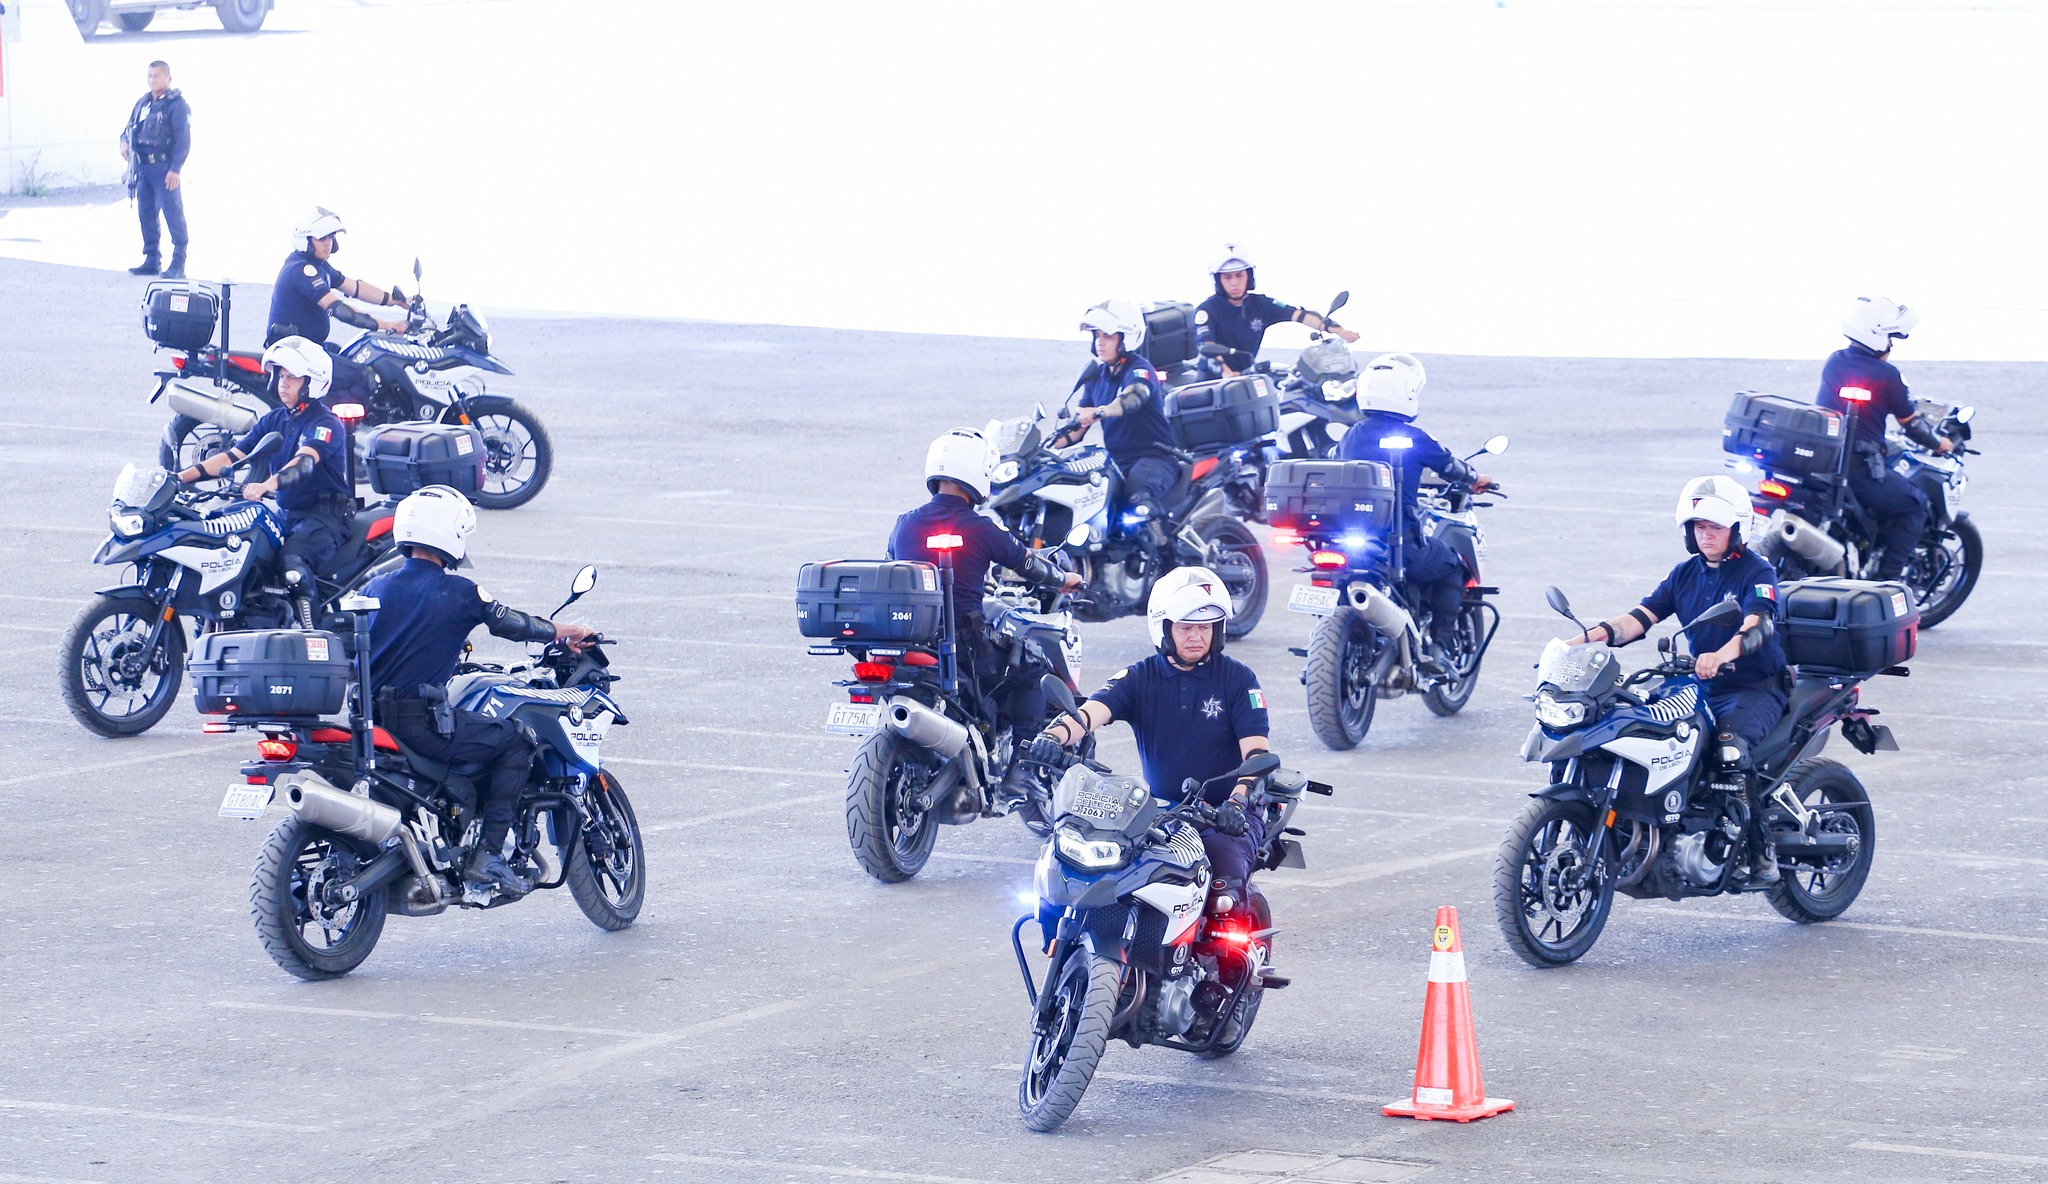 Grupo Halcón, la nueva fuerza contra los delitos cometidos por motociclistas